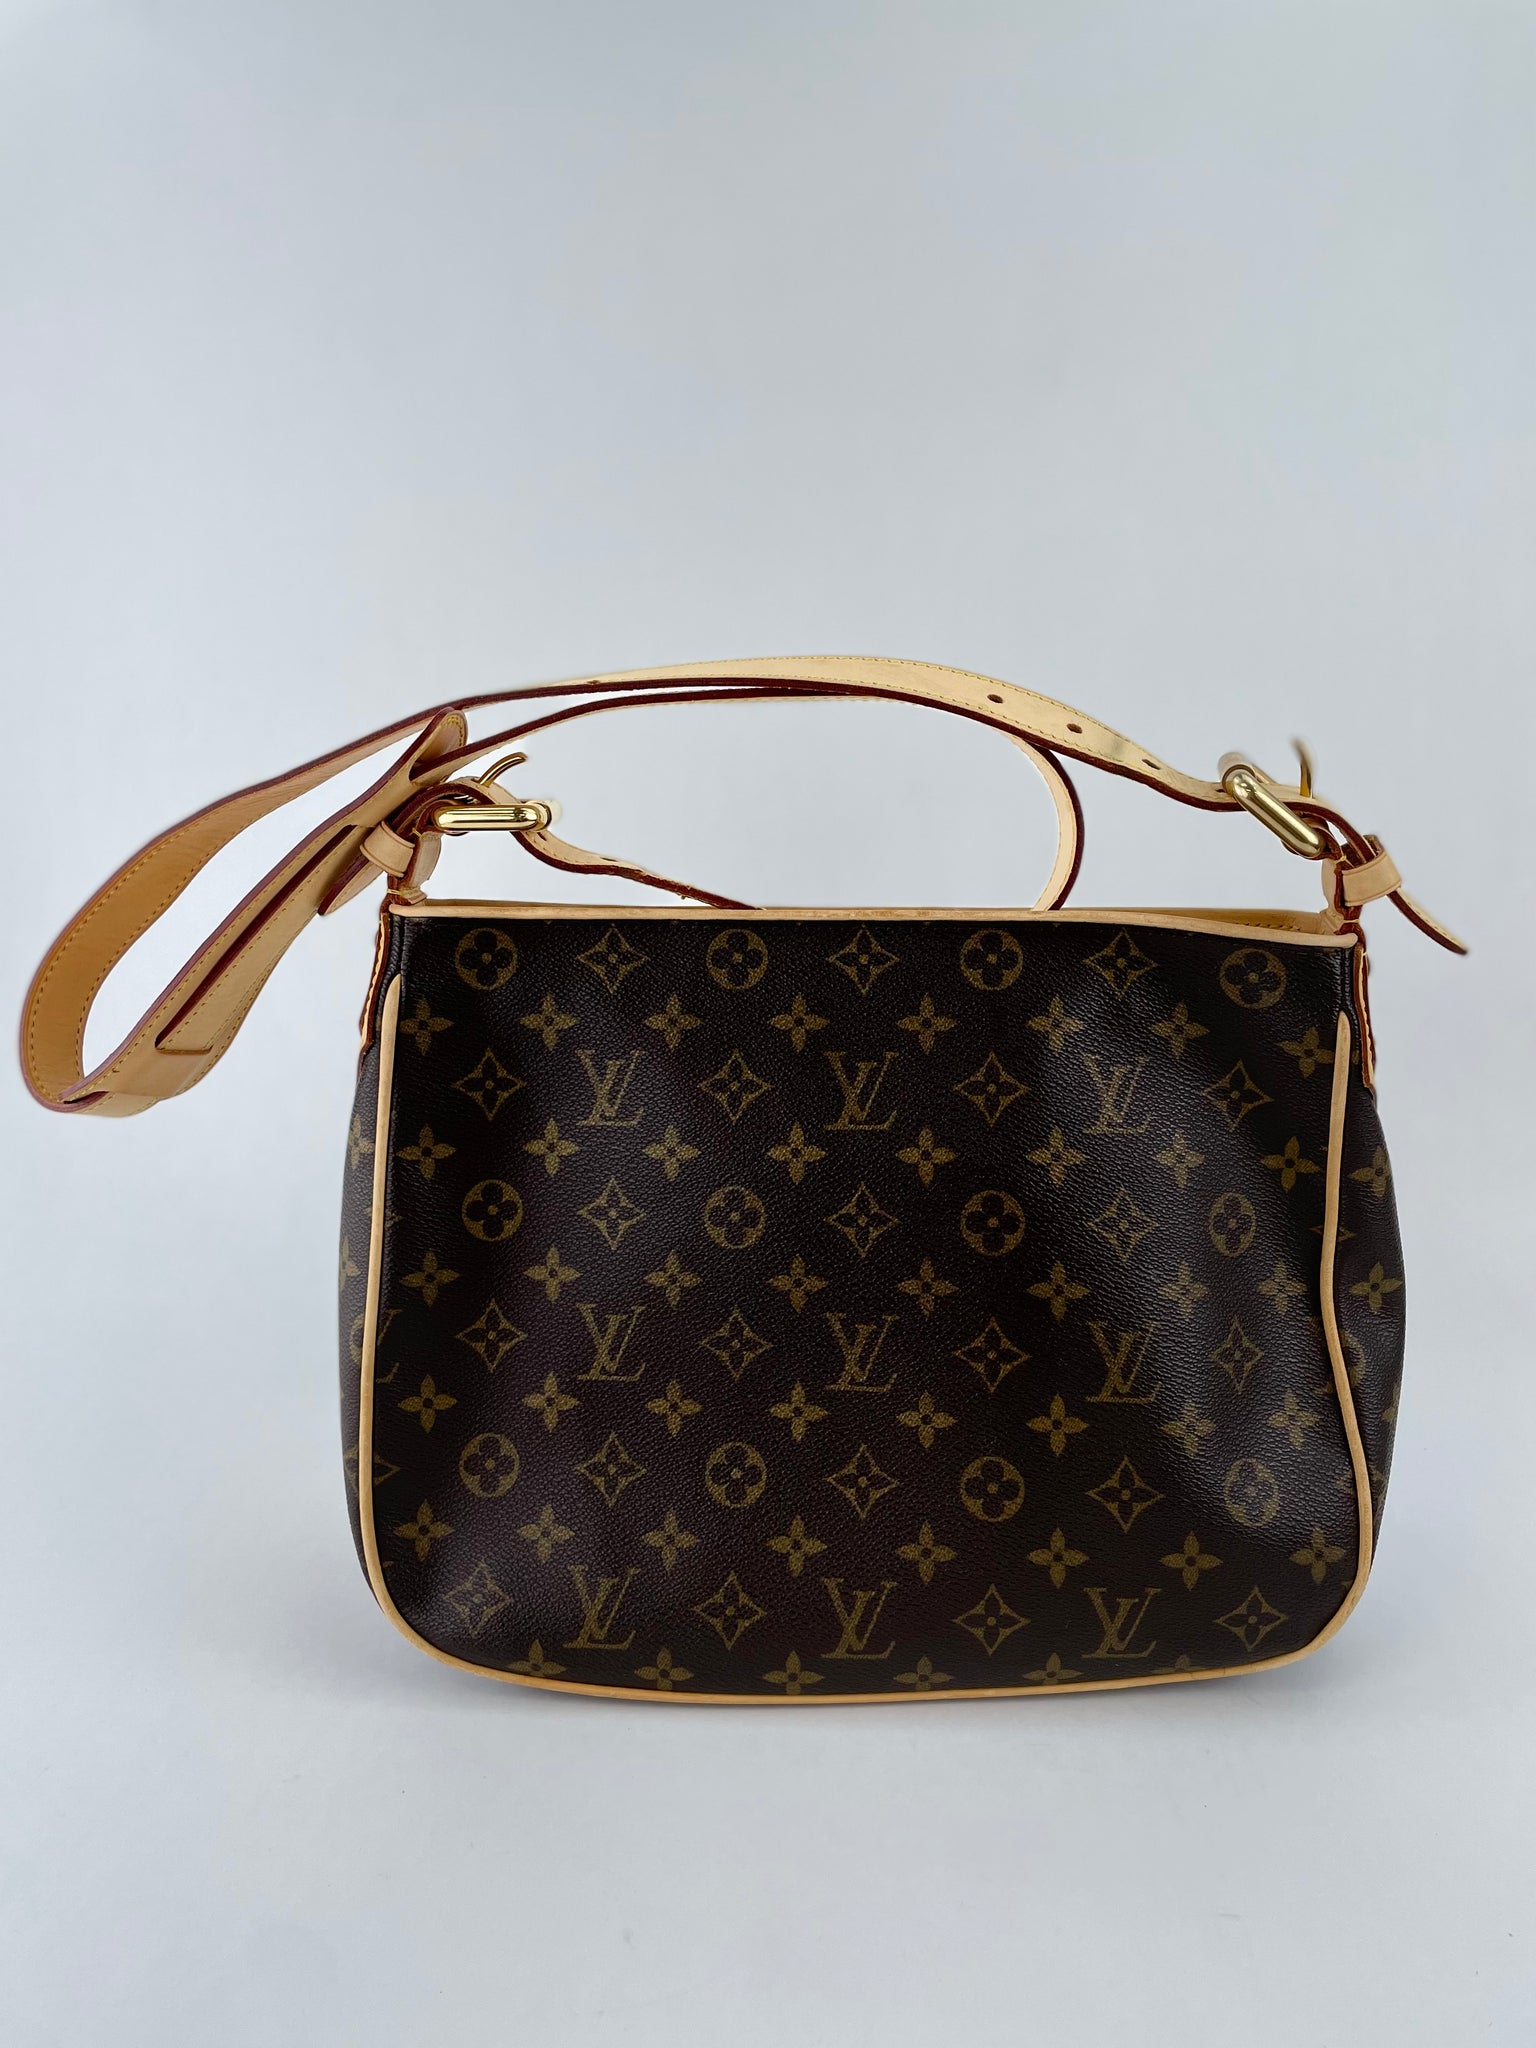 Used Louis Vuitton Hudson Gm Brw/Pvc/Brw Bag